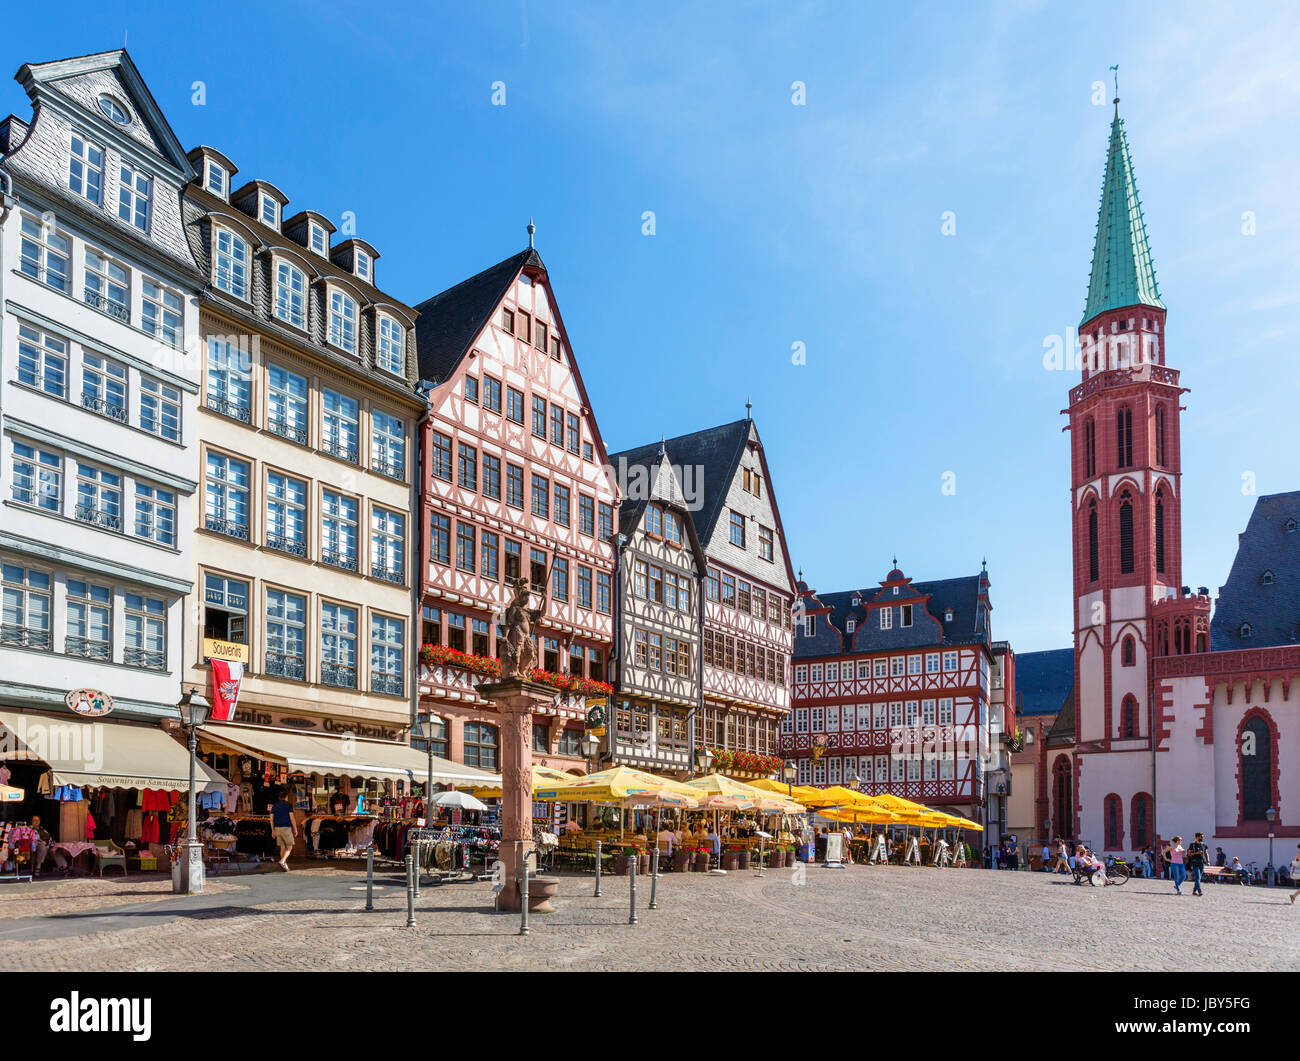 Traditionelle Häuser auf dem Römerberg, Frankfurt am Main, Deutschland Stockfoto